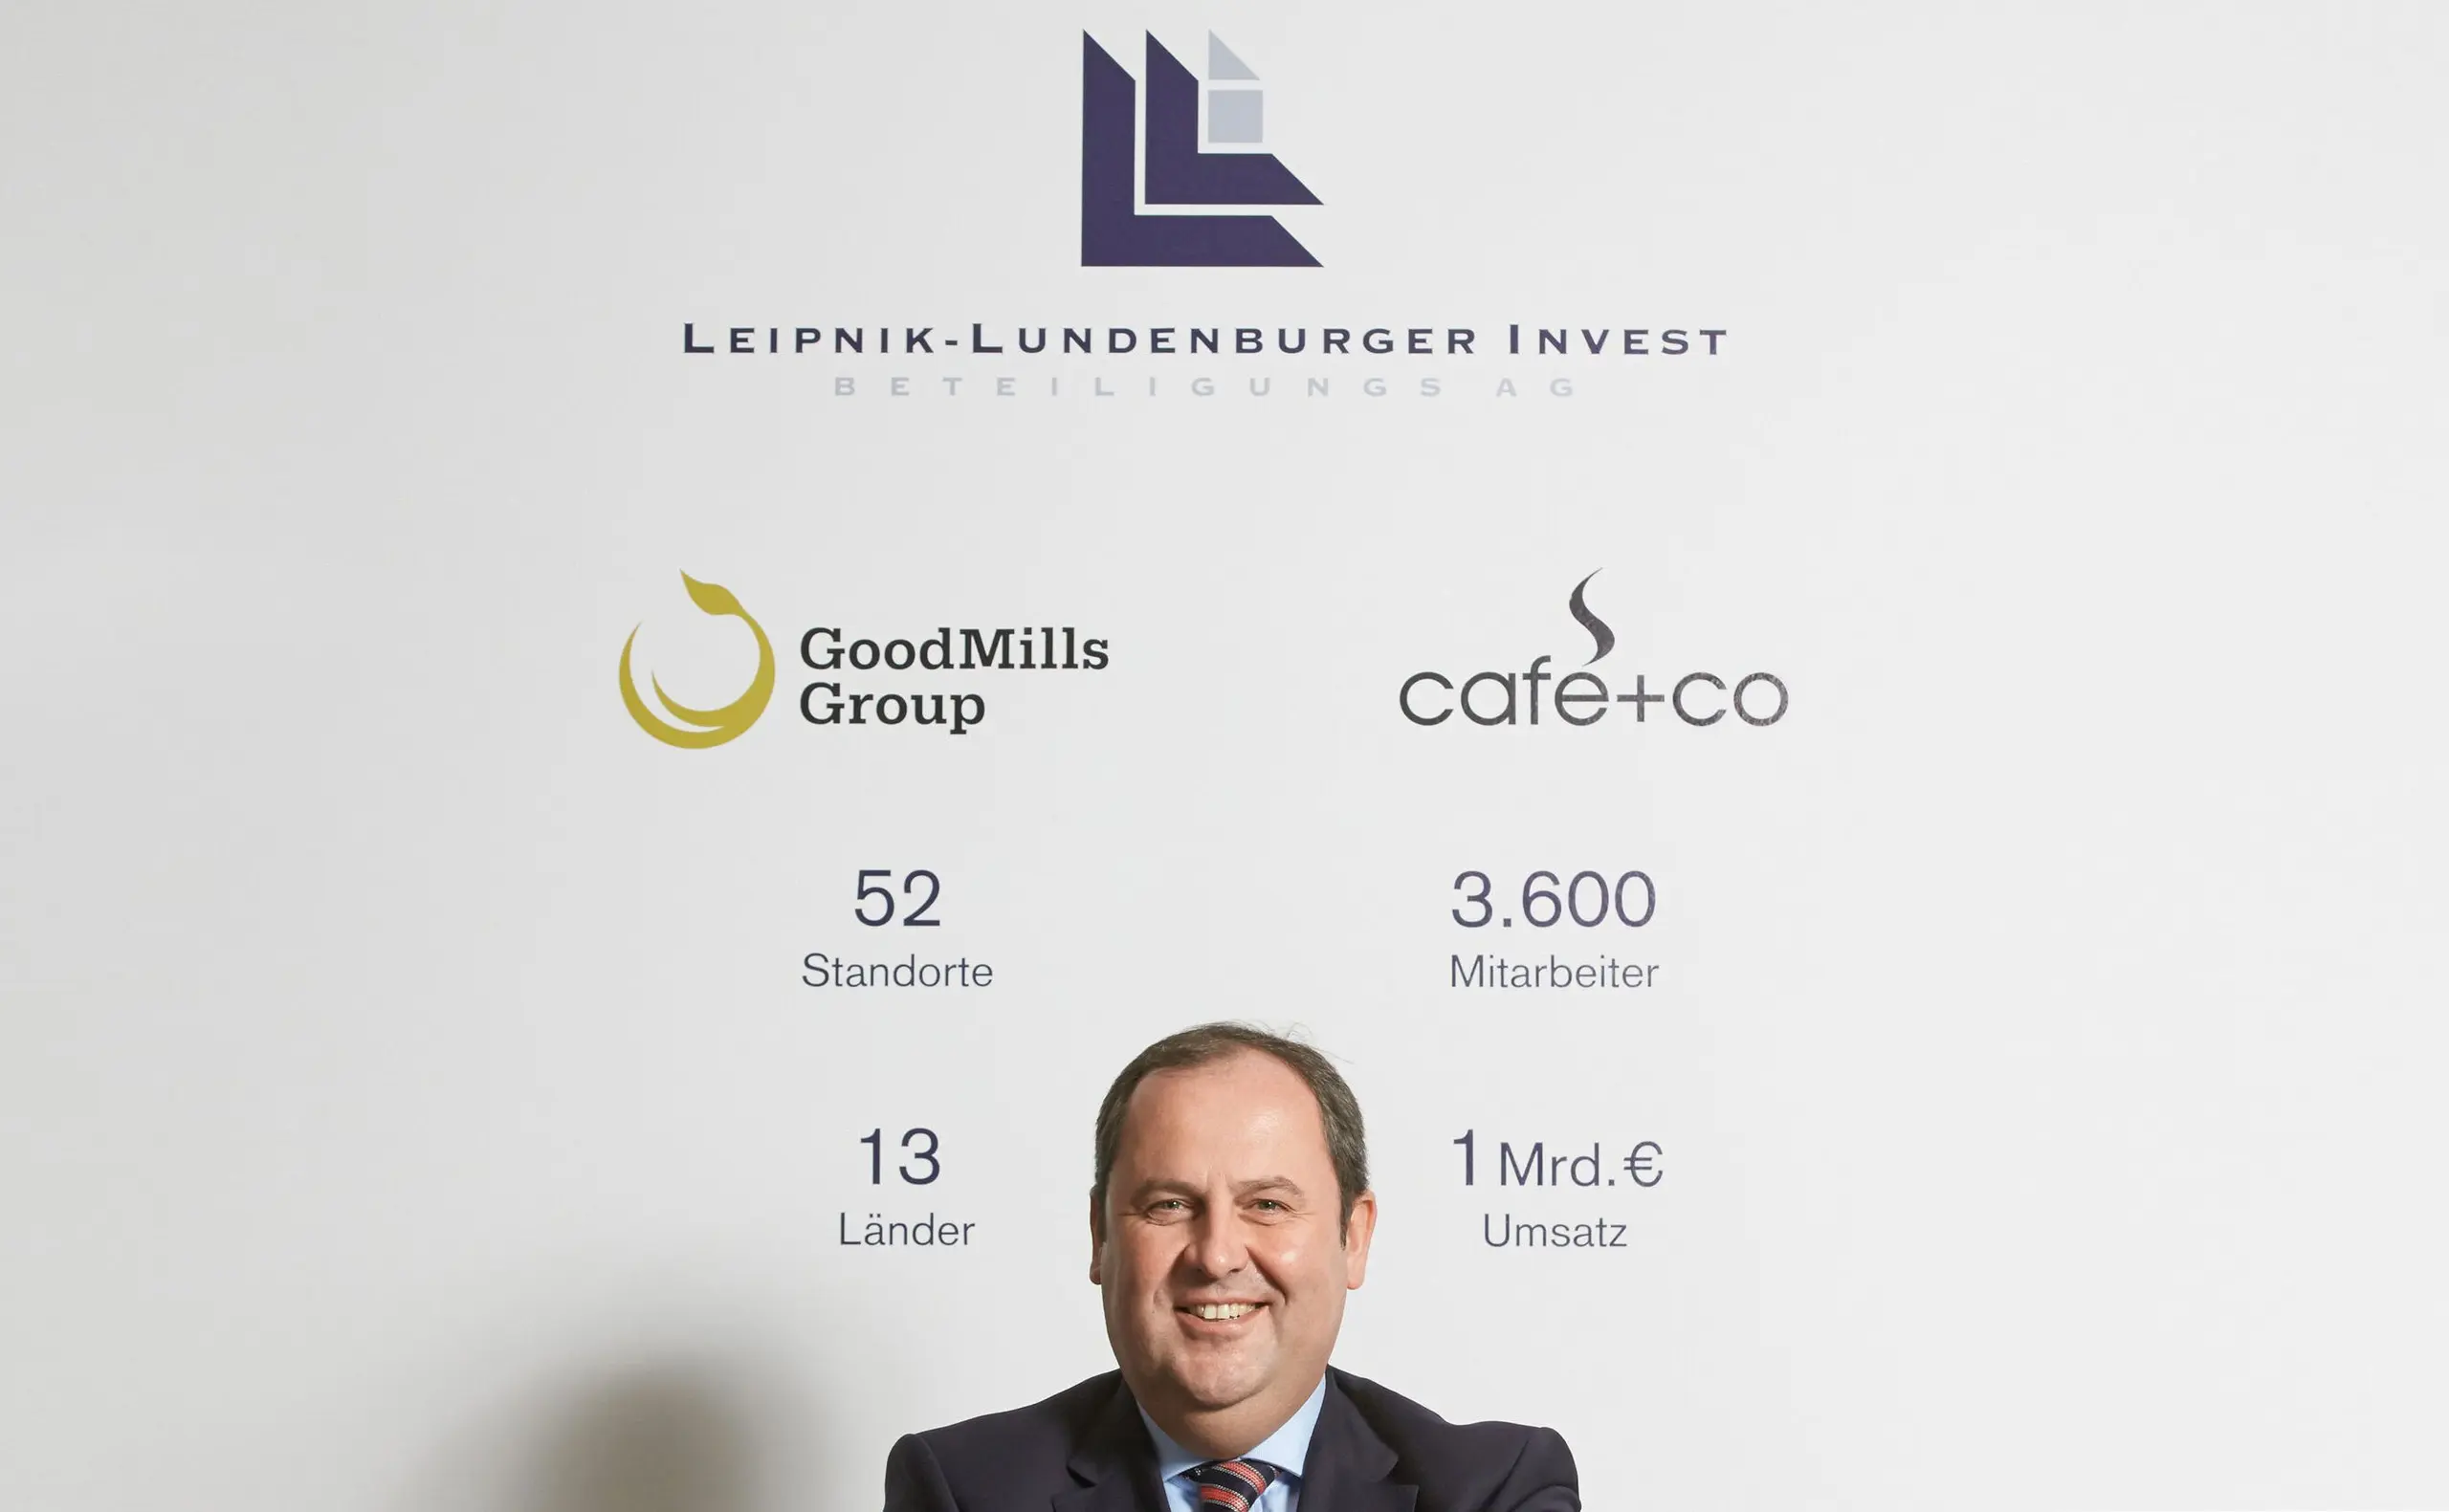 Leipnik-Lundenburger Invest ist eine dem Raiffeisen-Konzern zurechenbare Beteiligungsgesellschaft im Zucker-, Mehl- und Kaffee-Geschäft.